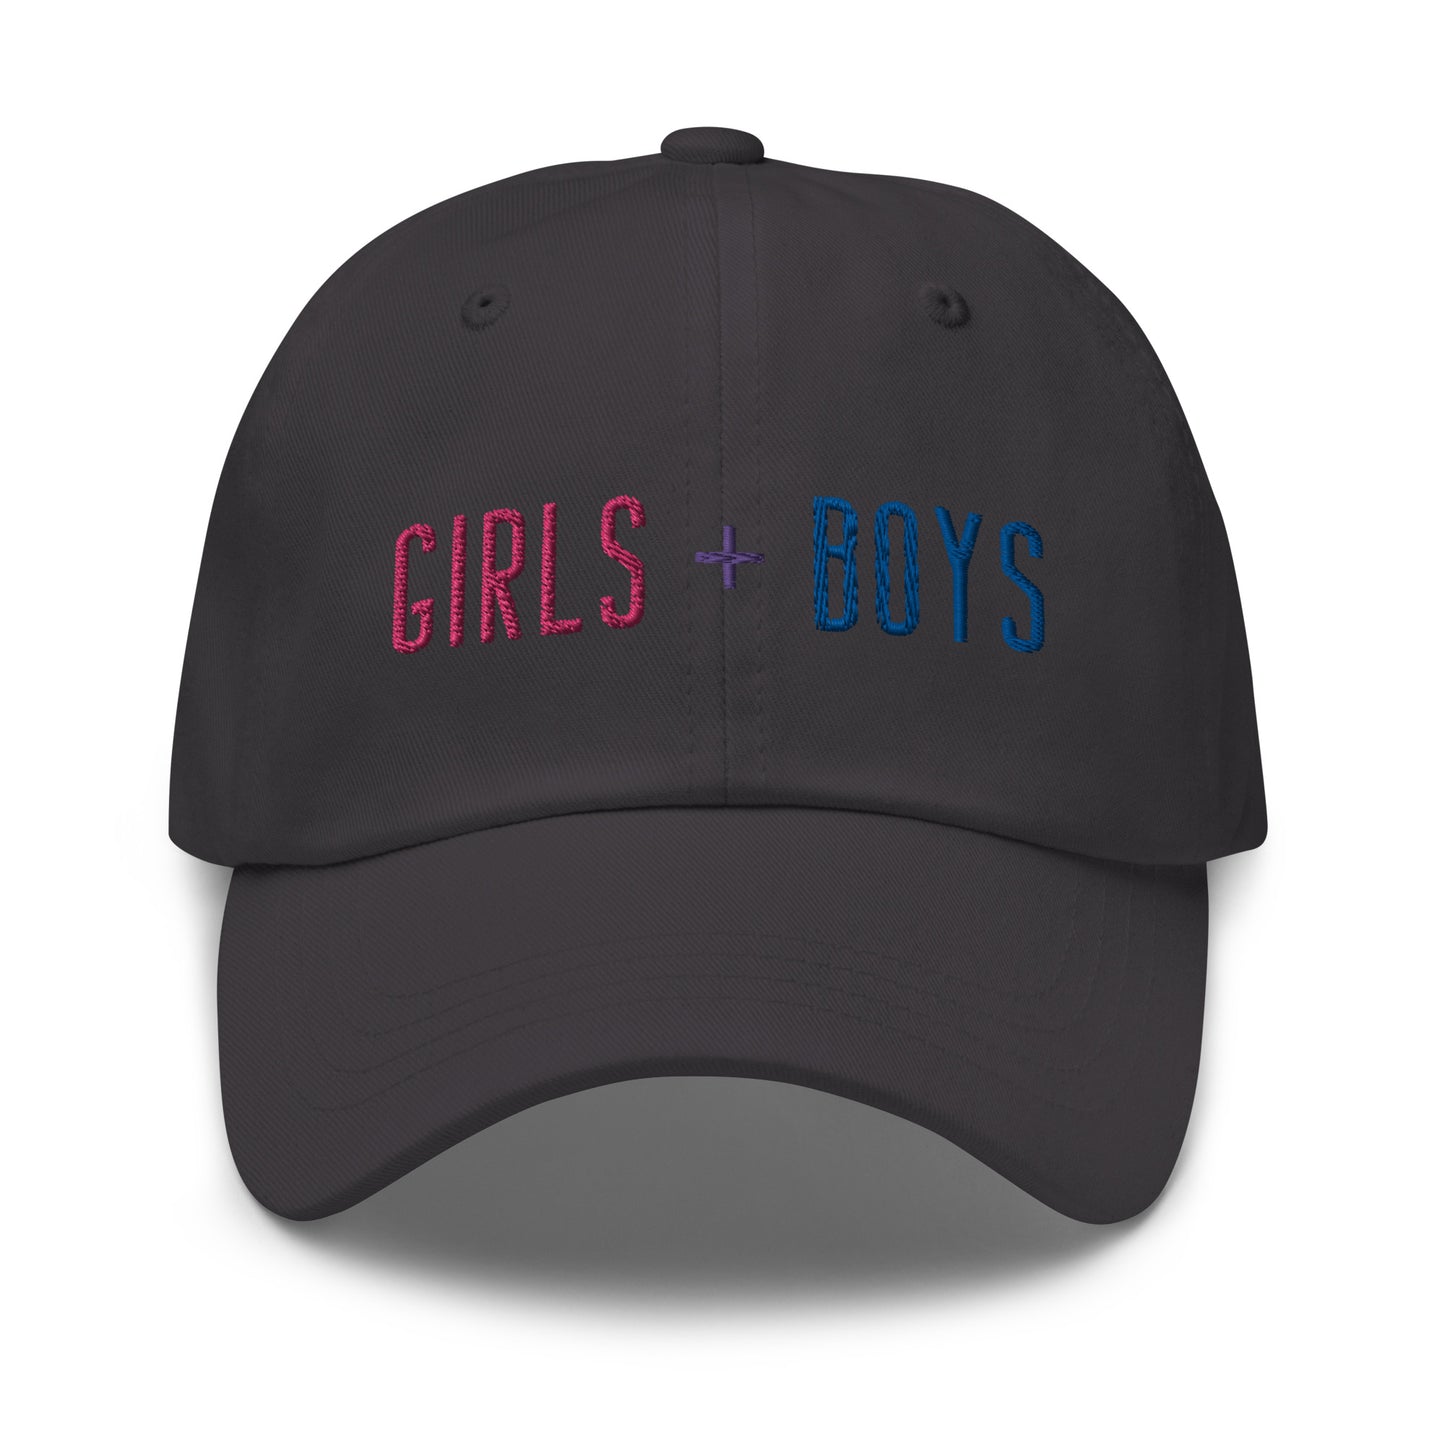 Girls + Boys Hat